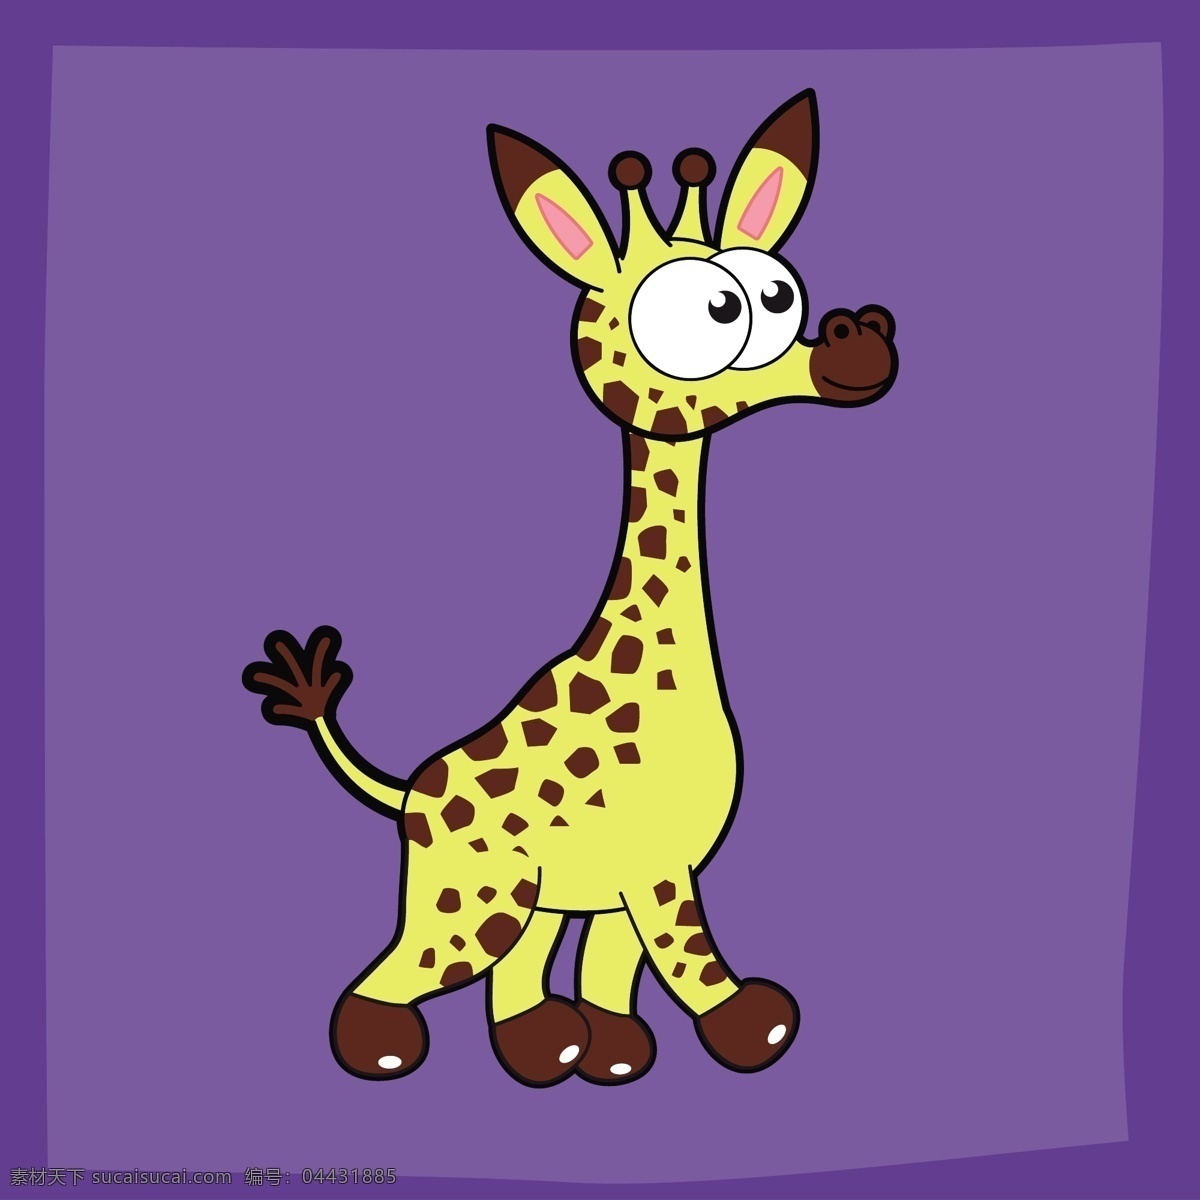 矢量 卡通 可爱 野生动物 长颈鹿 动物 素材图片 卡通动物 矢量动物 可爱动物 小动物 卡通元素 卡通素材 生物